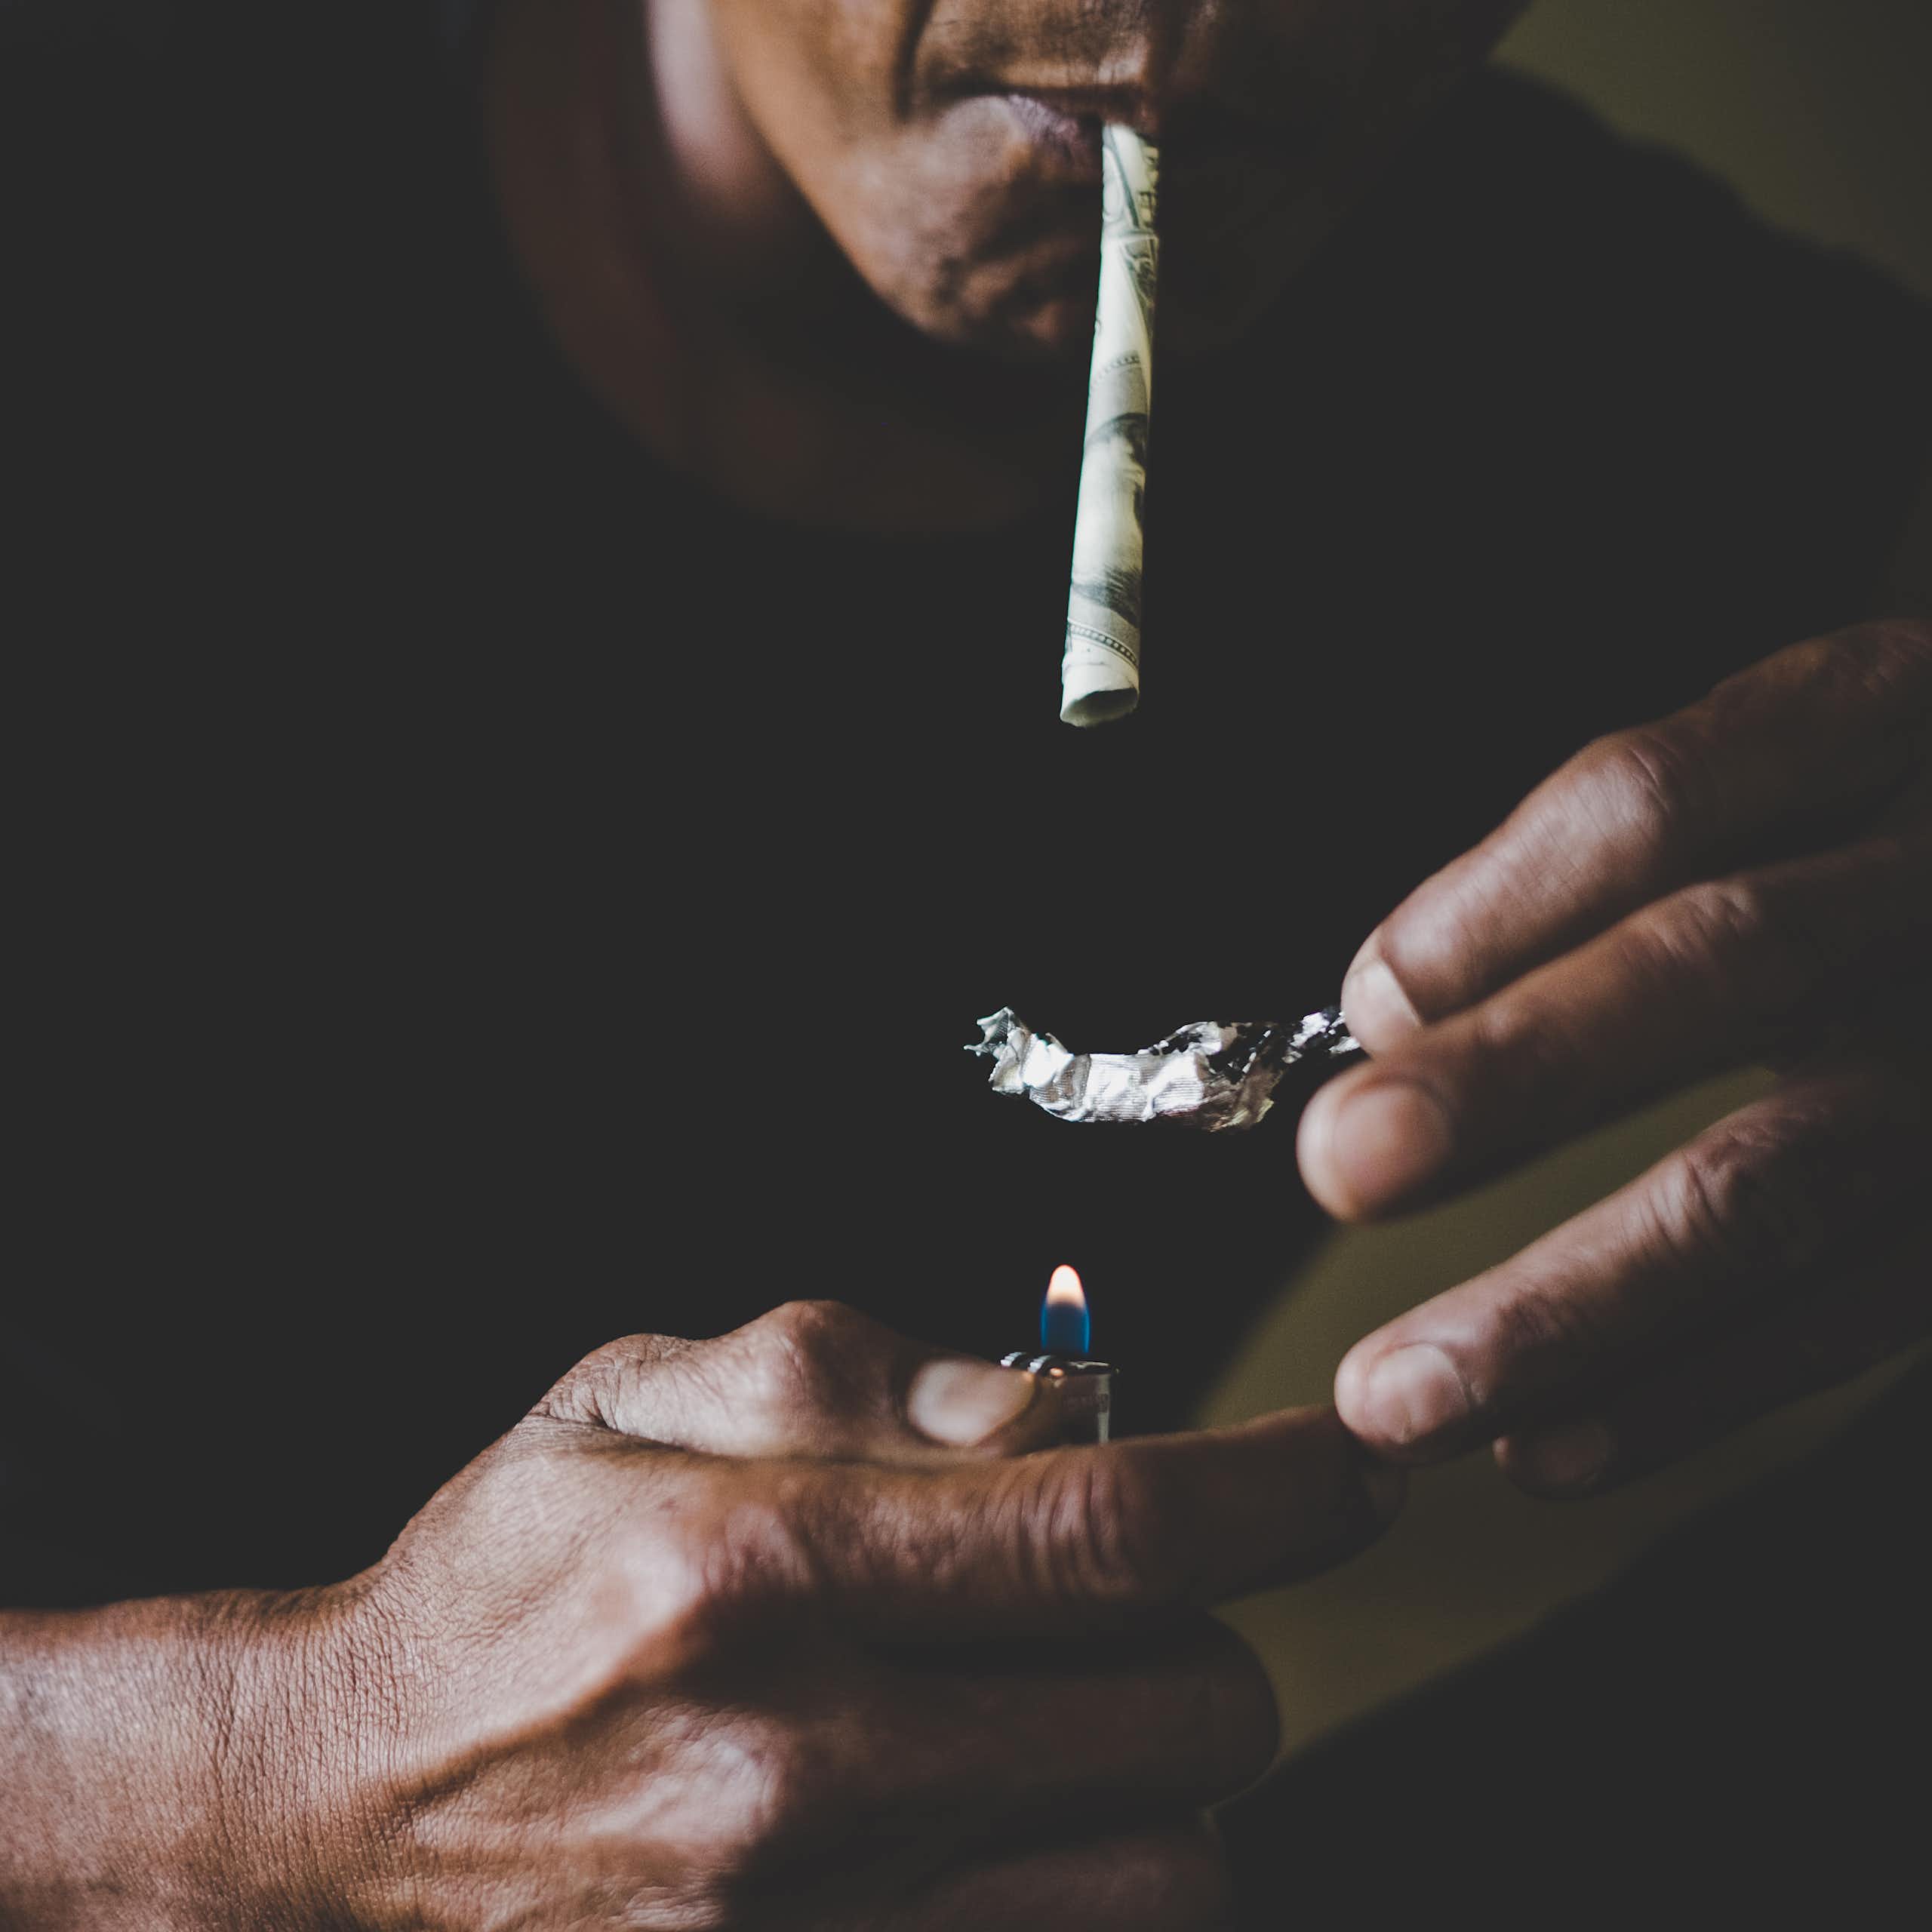 A man smoking heroin